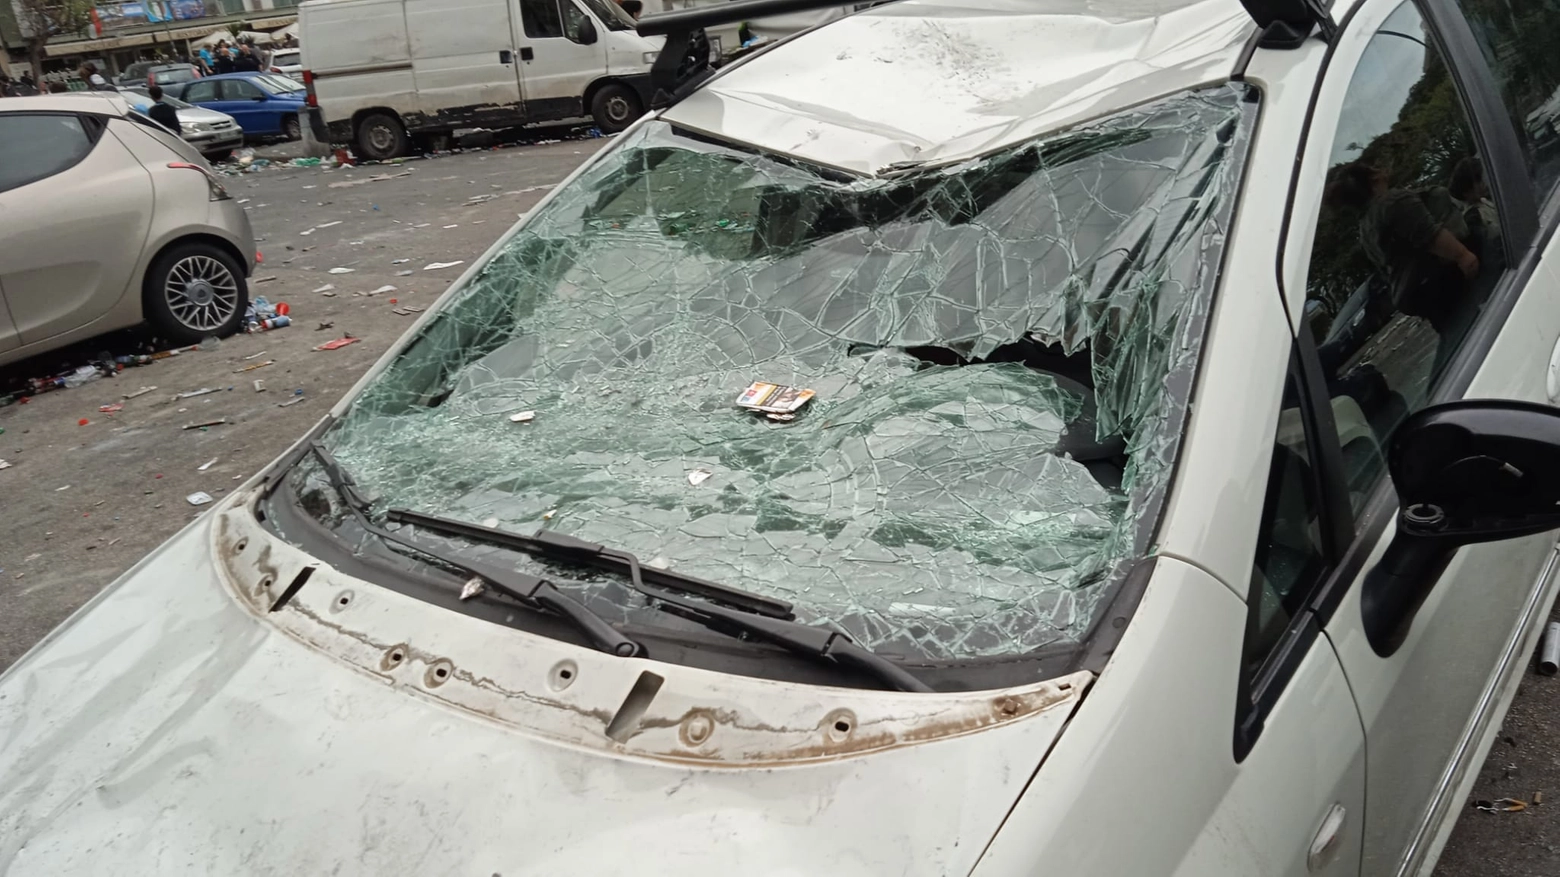 Decine di auto devastate nel corso del match Napoli-Salernitana